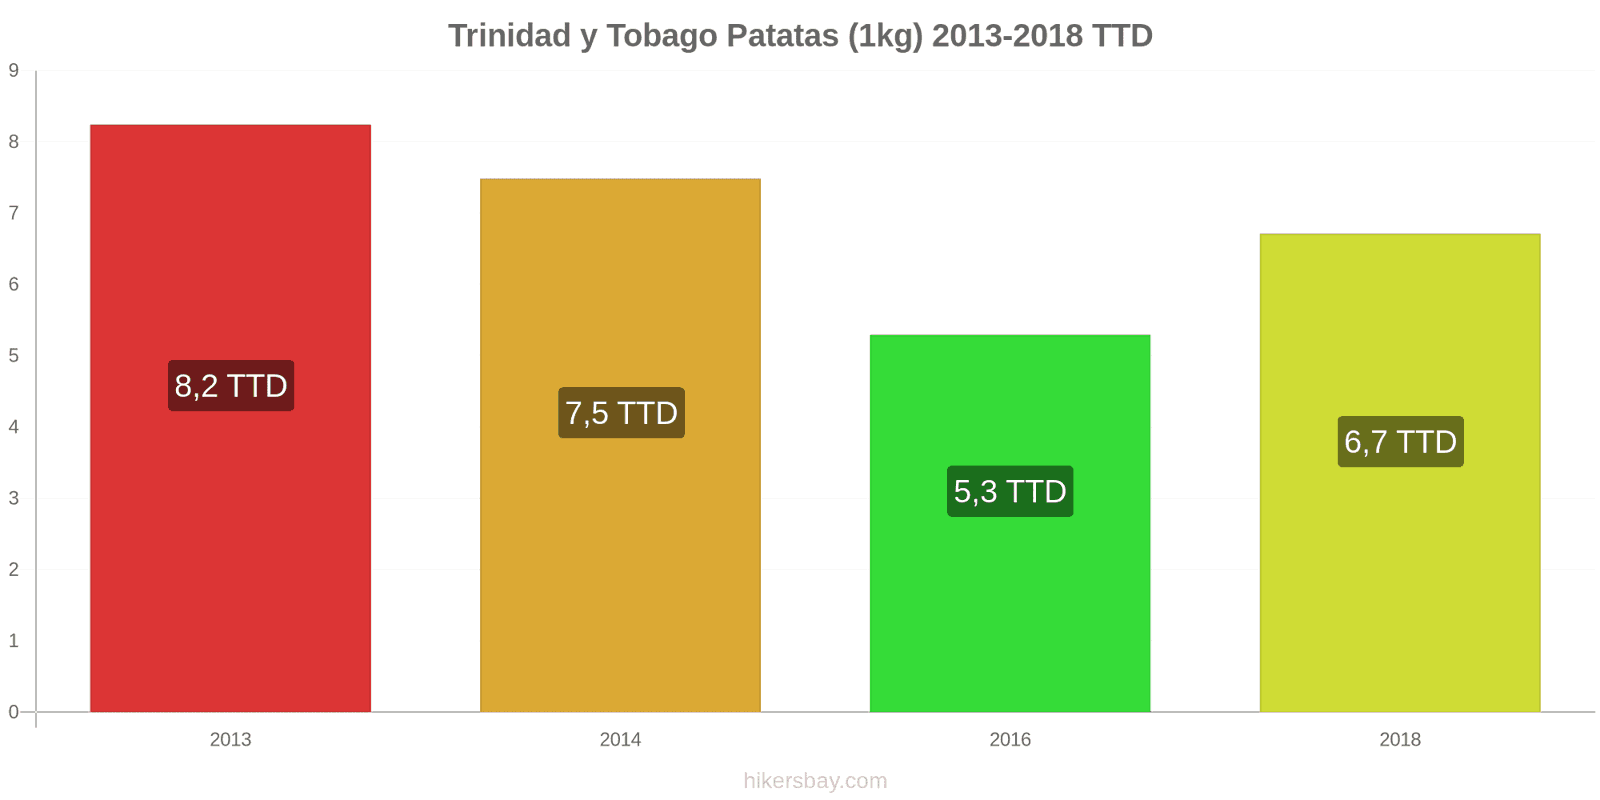 Trinidad y Tobago cambios de precios Patatas (1kg) hikersbay.com